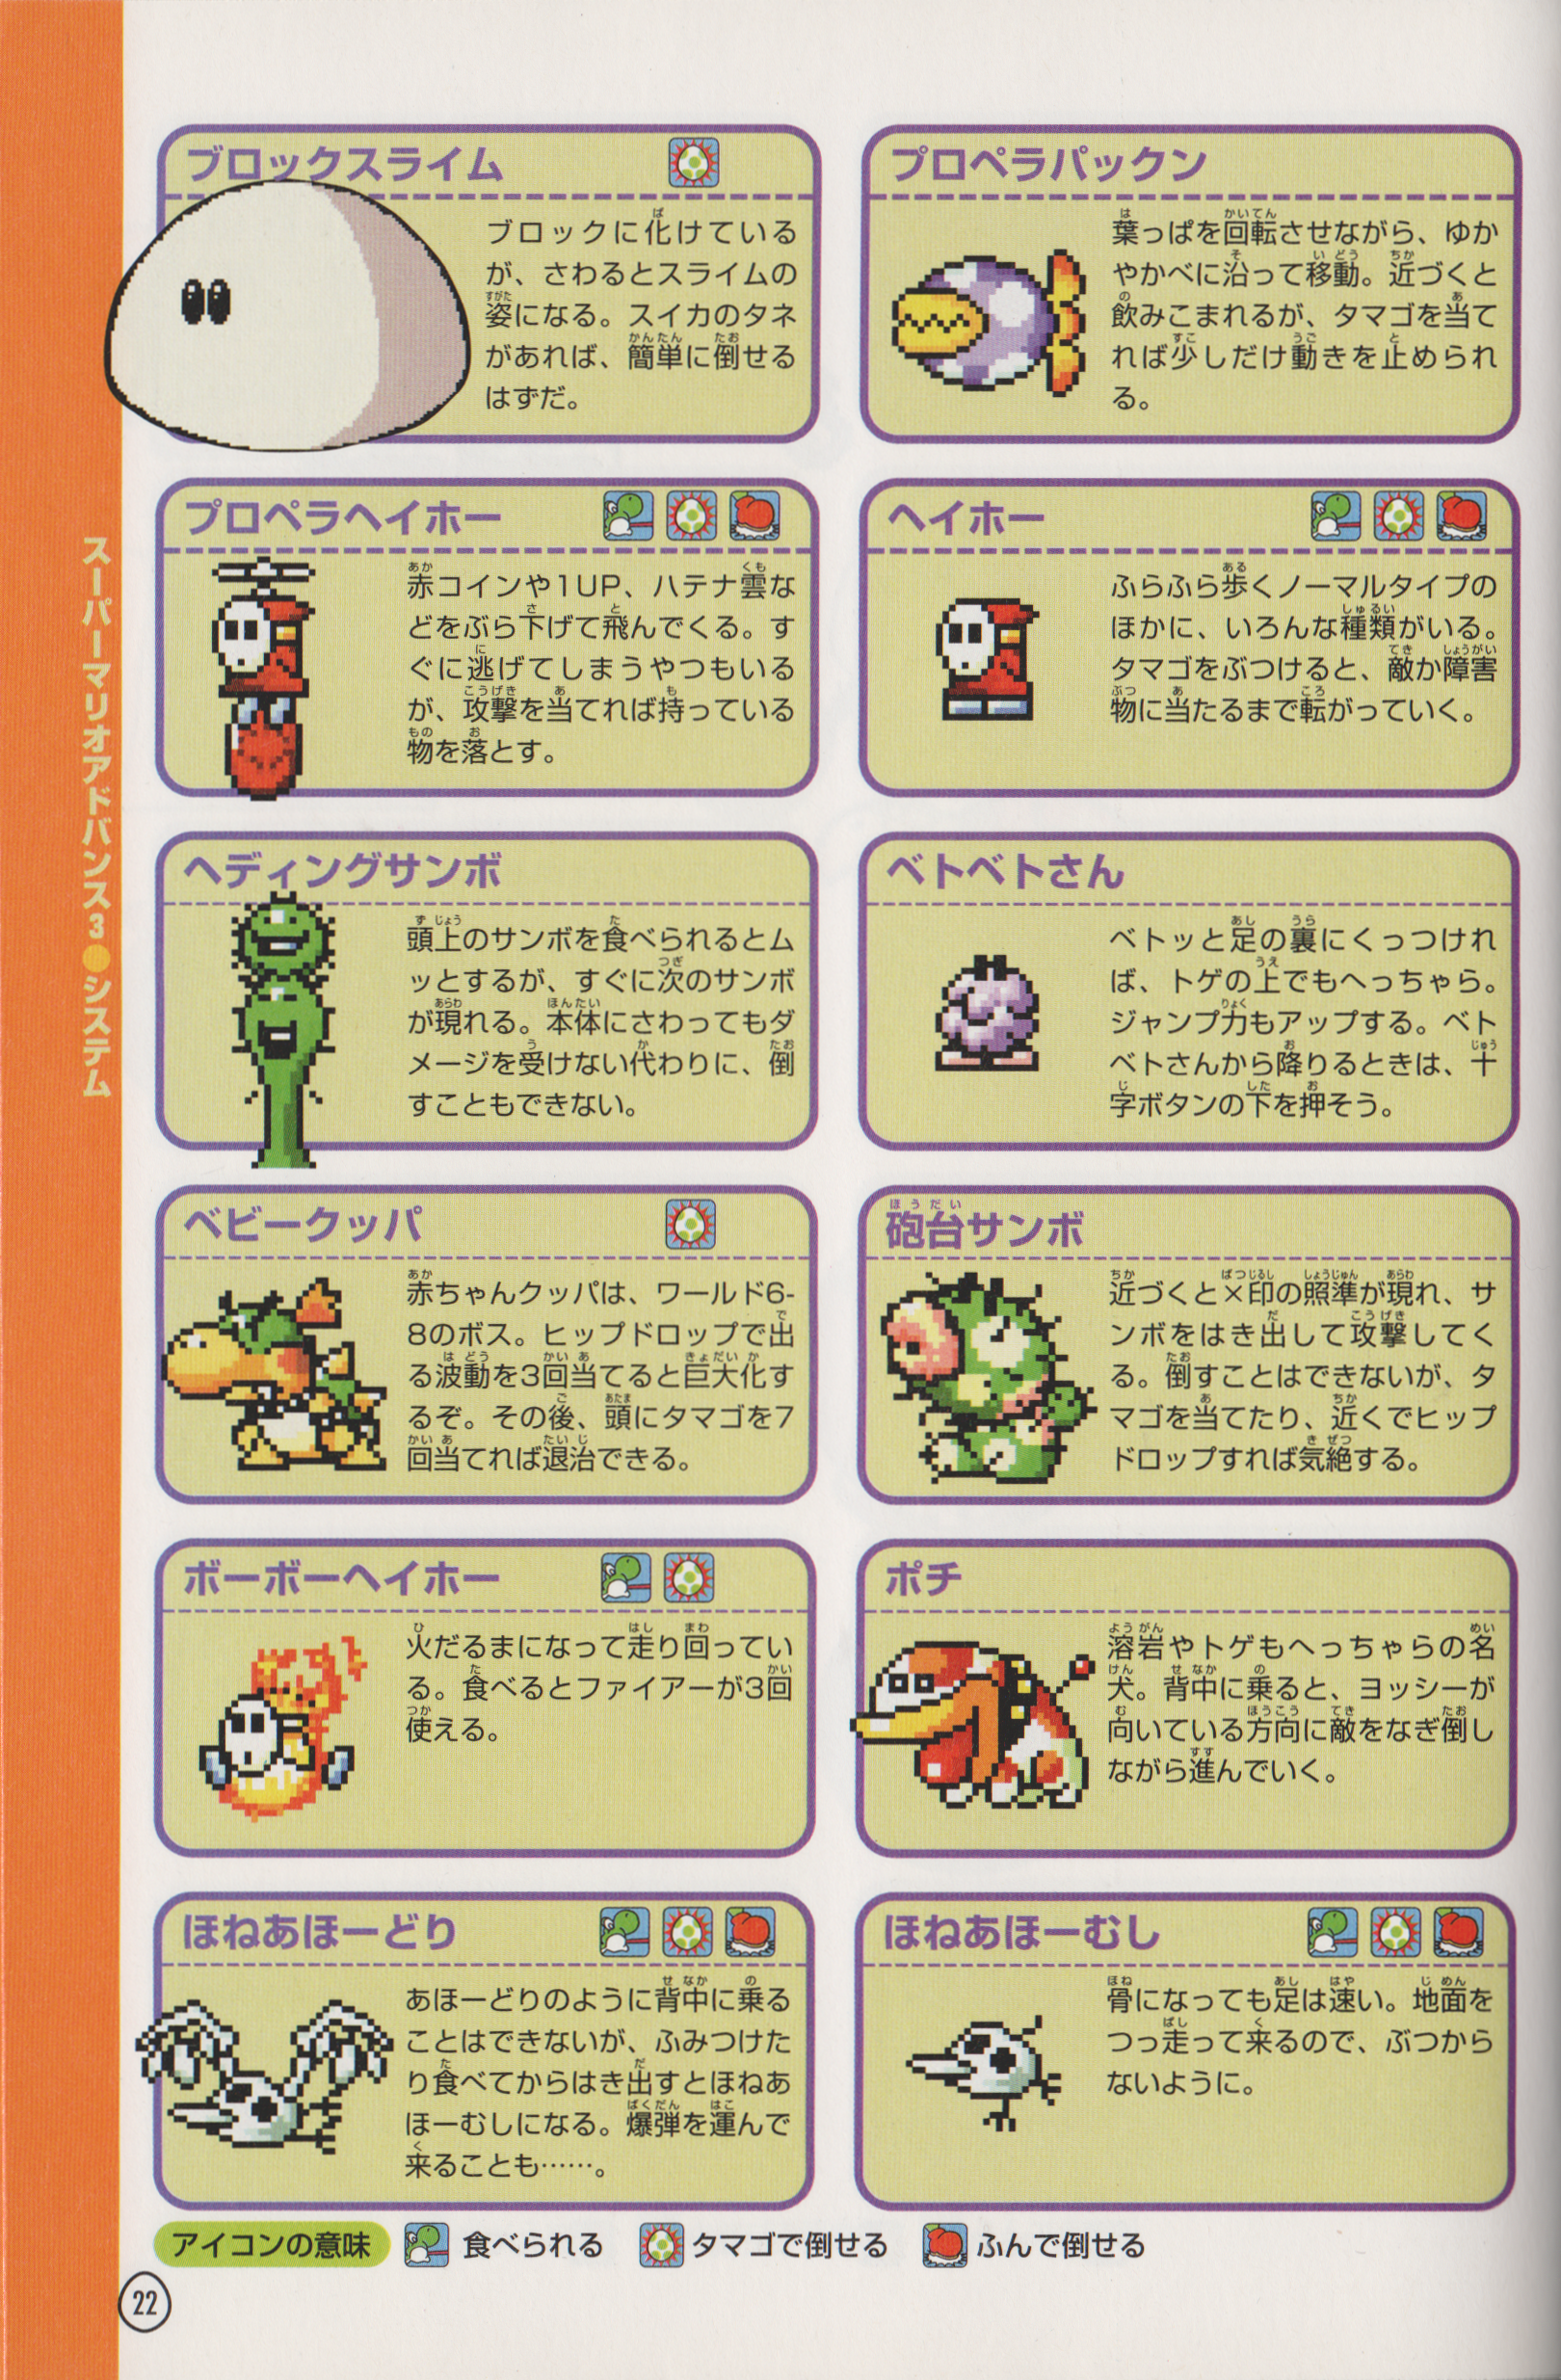 Slime Super Mario Wiki The Mario Encyclopedia